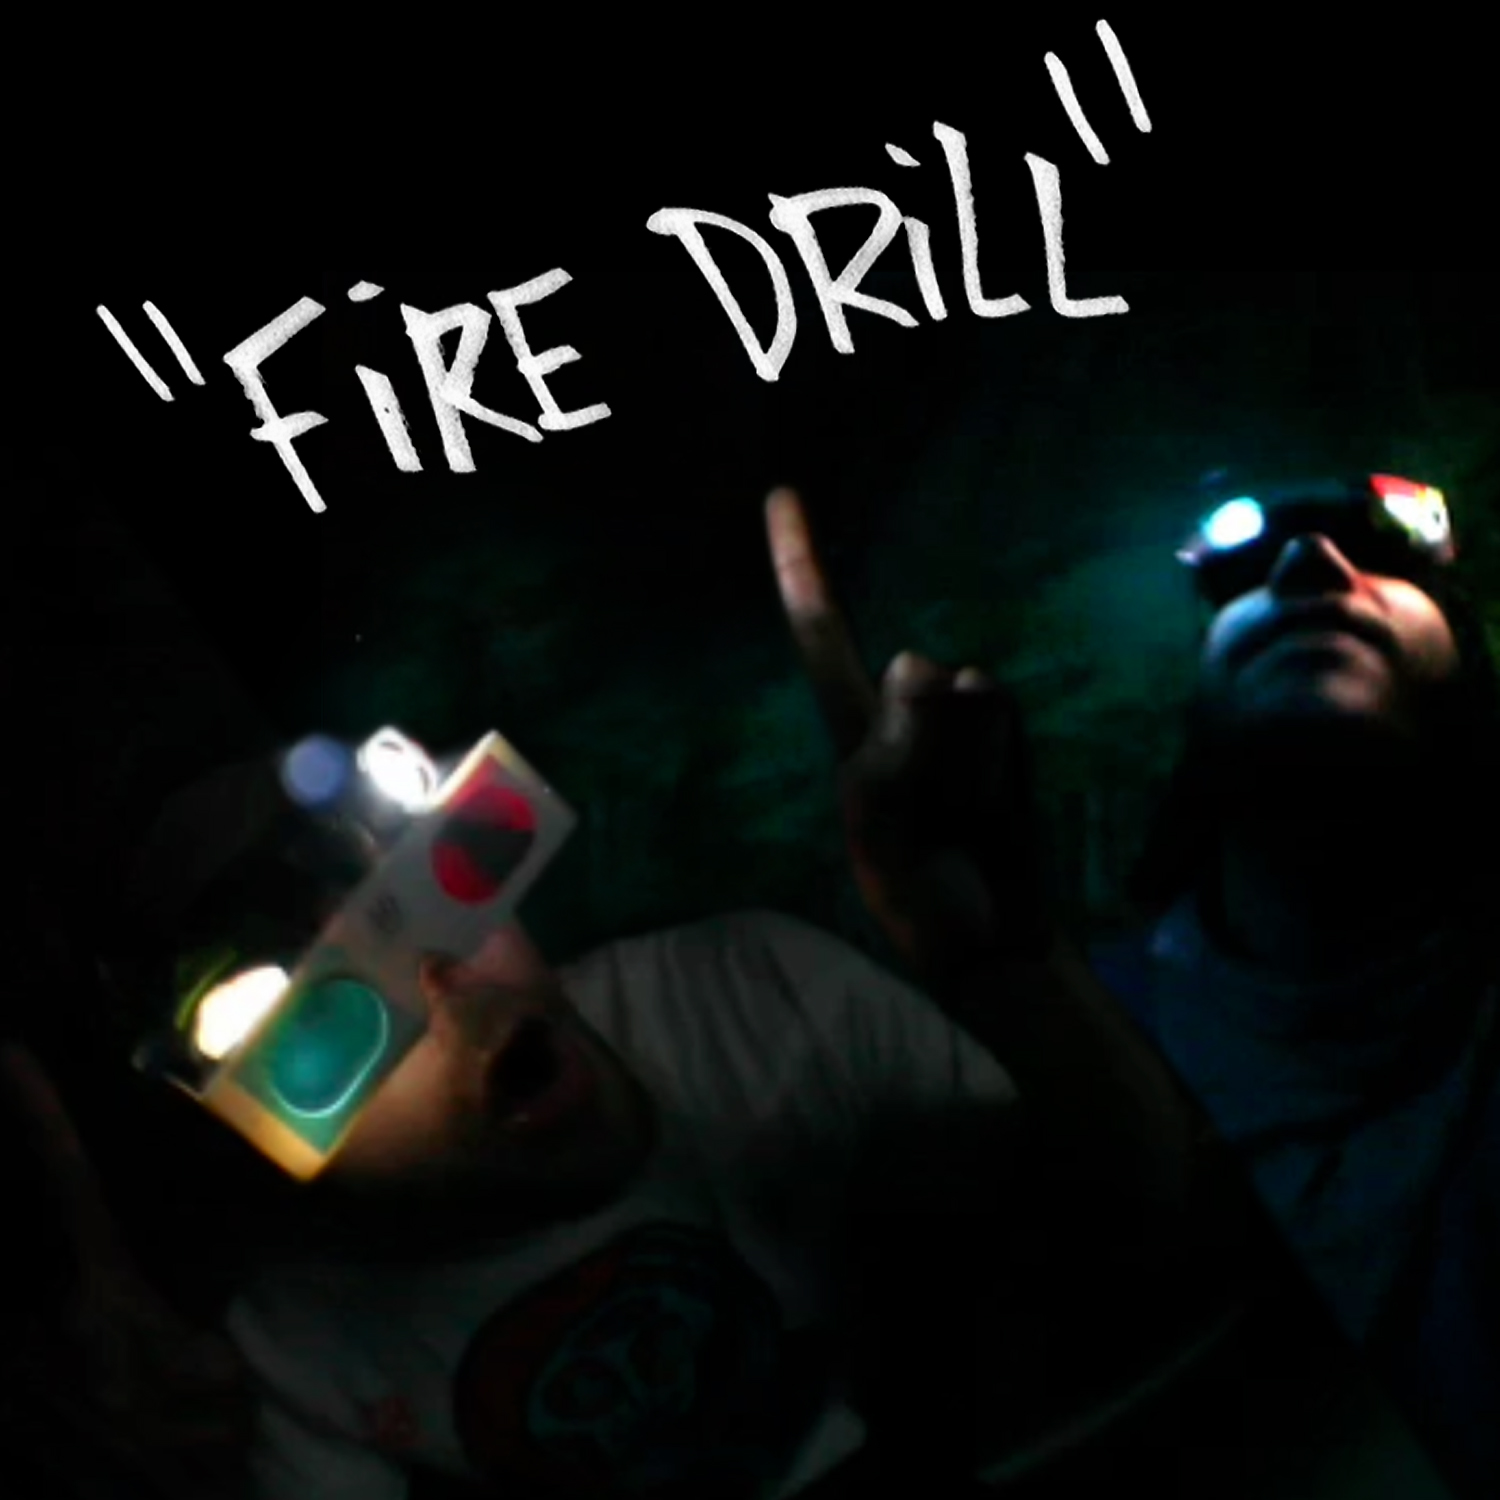 fire-drill-art-5x5-300dpi